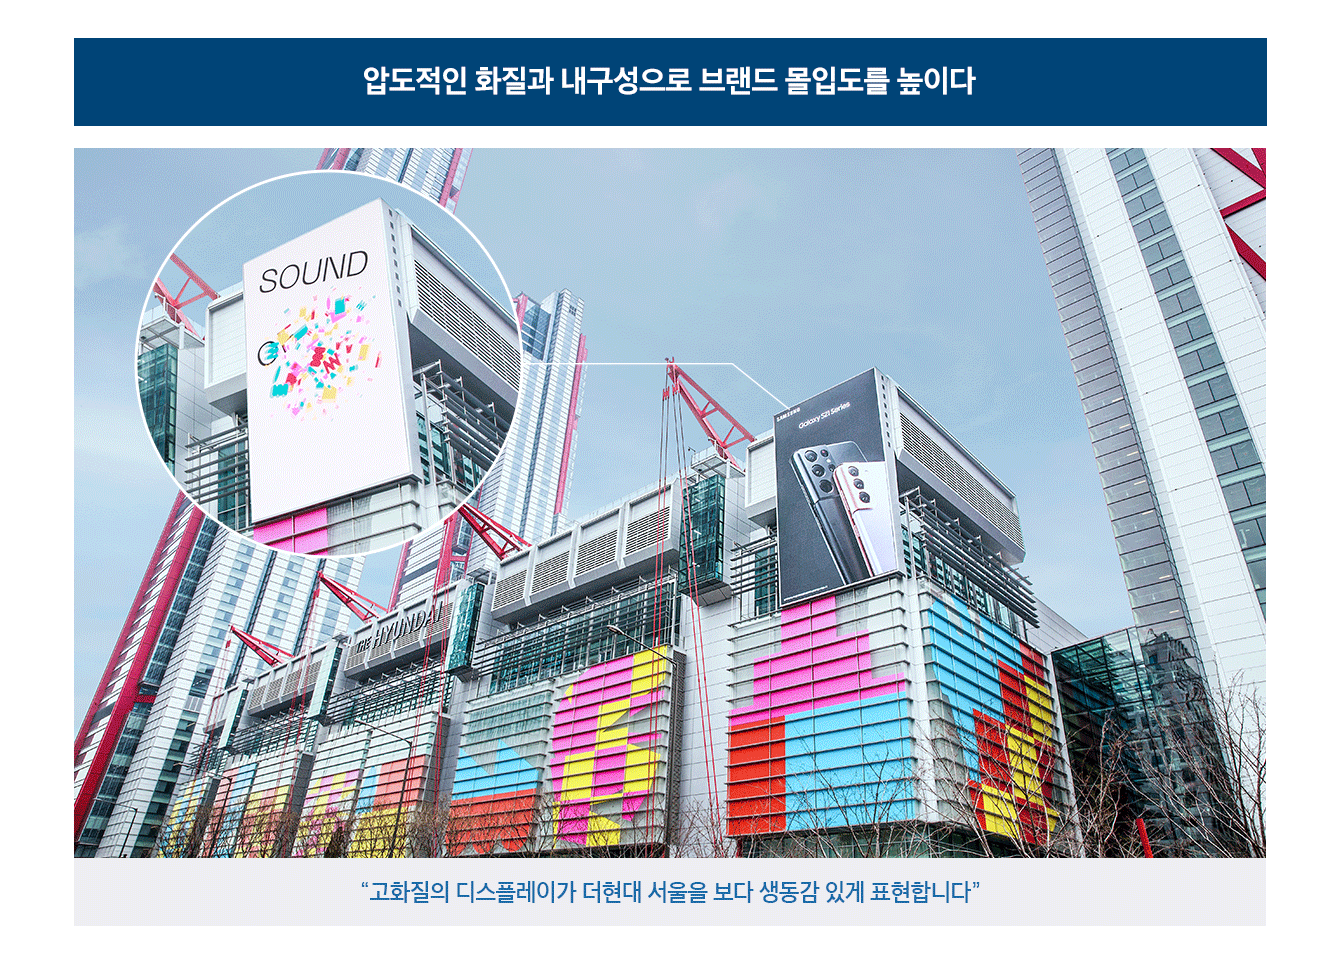 압도적인 화질과 내구성으로 브랜드 몰입도를 높이다.고화질의 디스플레이가 더 현대 서울을 보다 생동감 있게 표현합니다.더현대 서울 외부에 삼성 스마트 LED 사이니지가 달려있는 모습